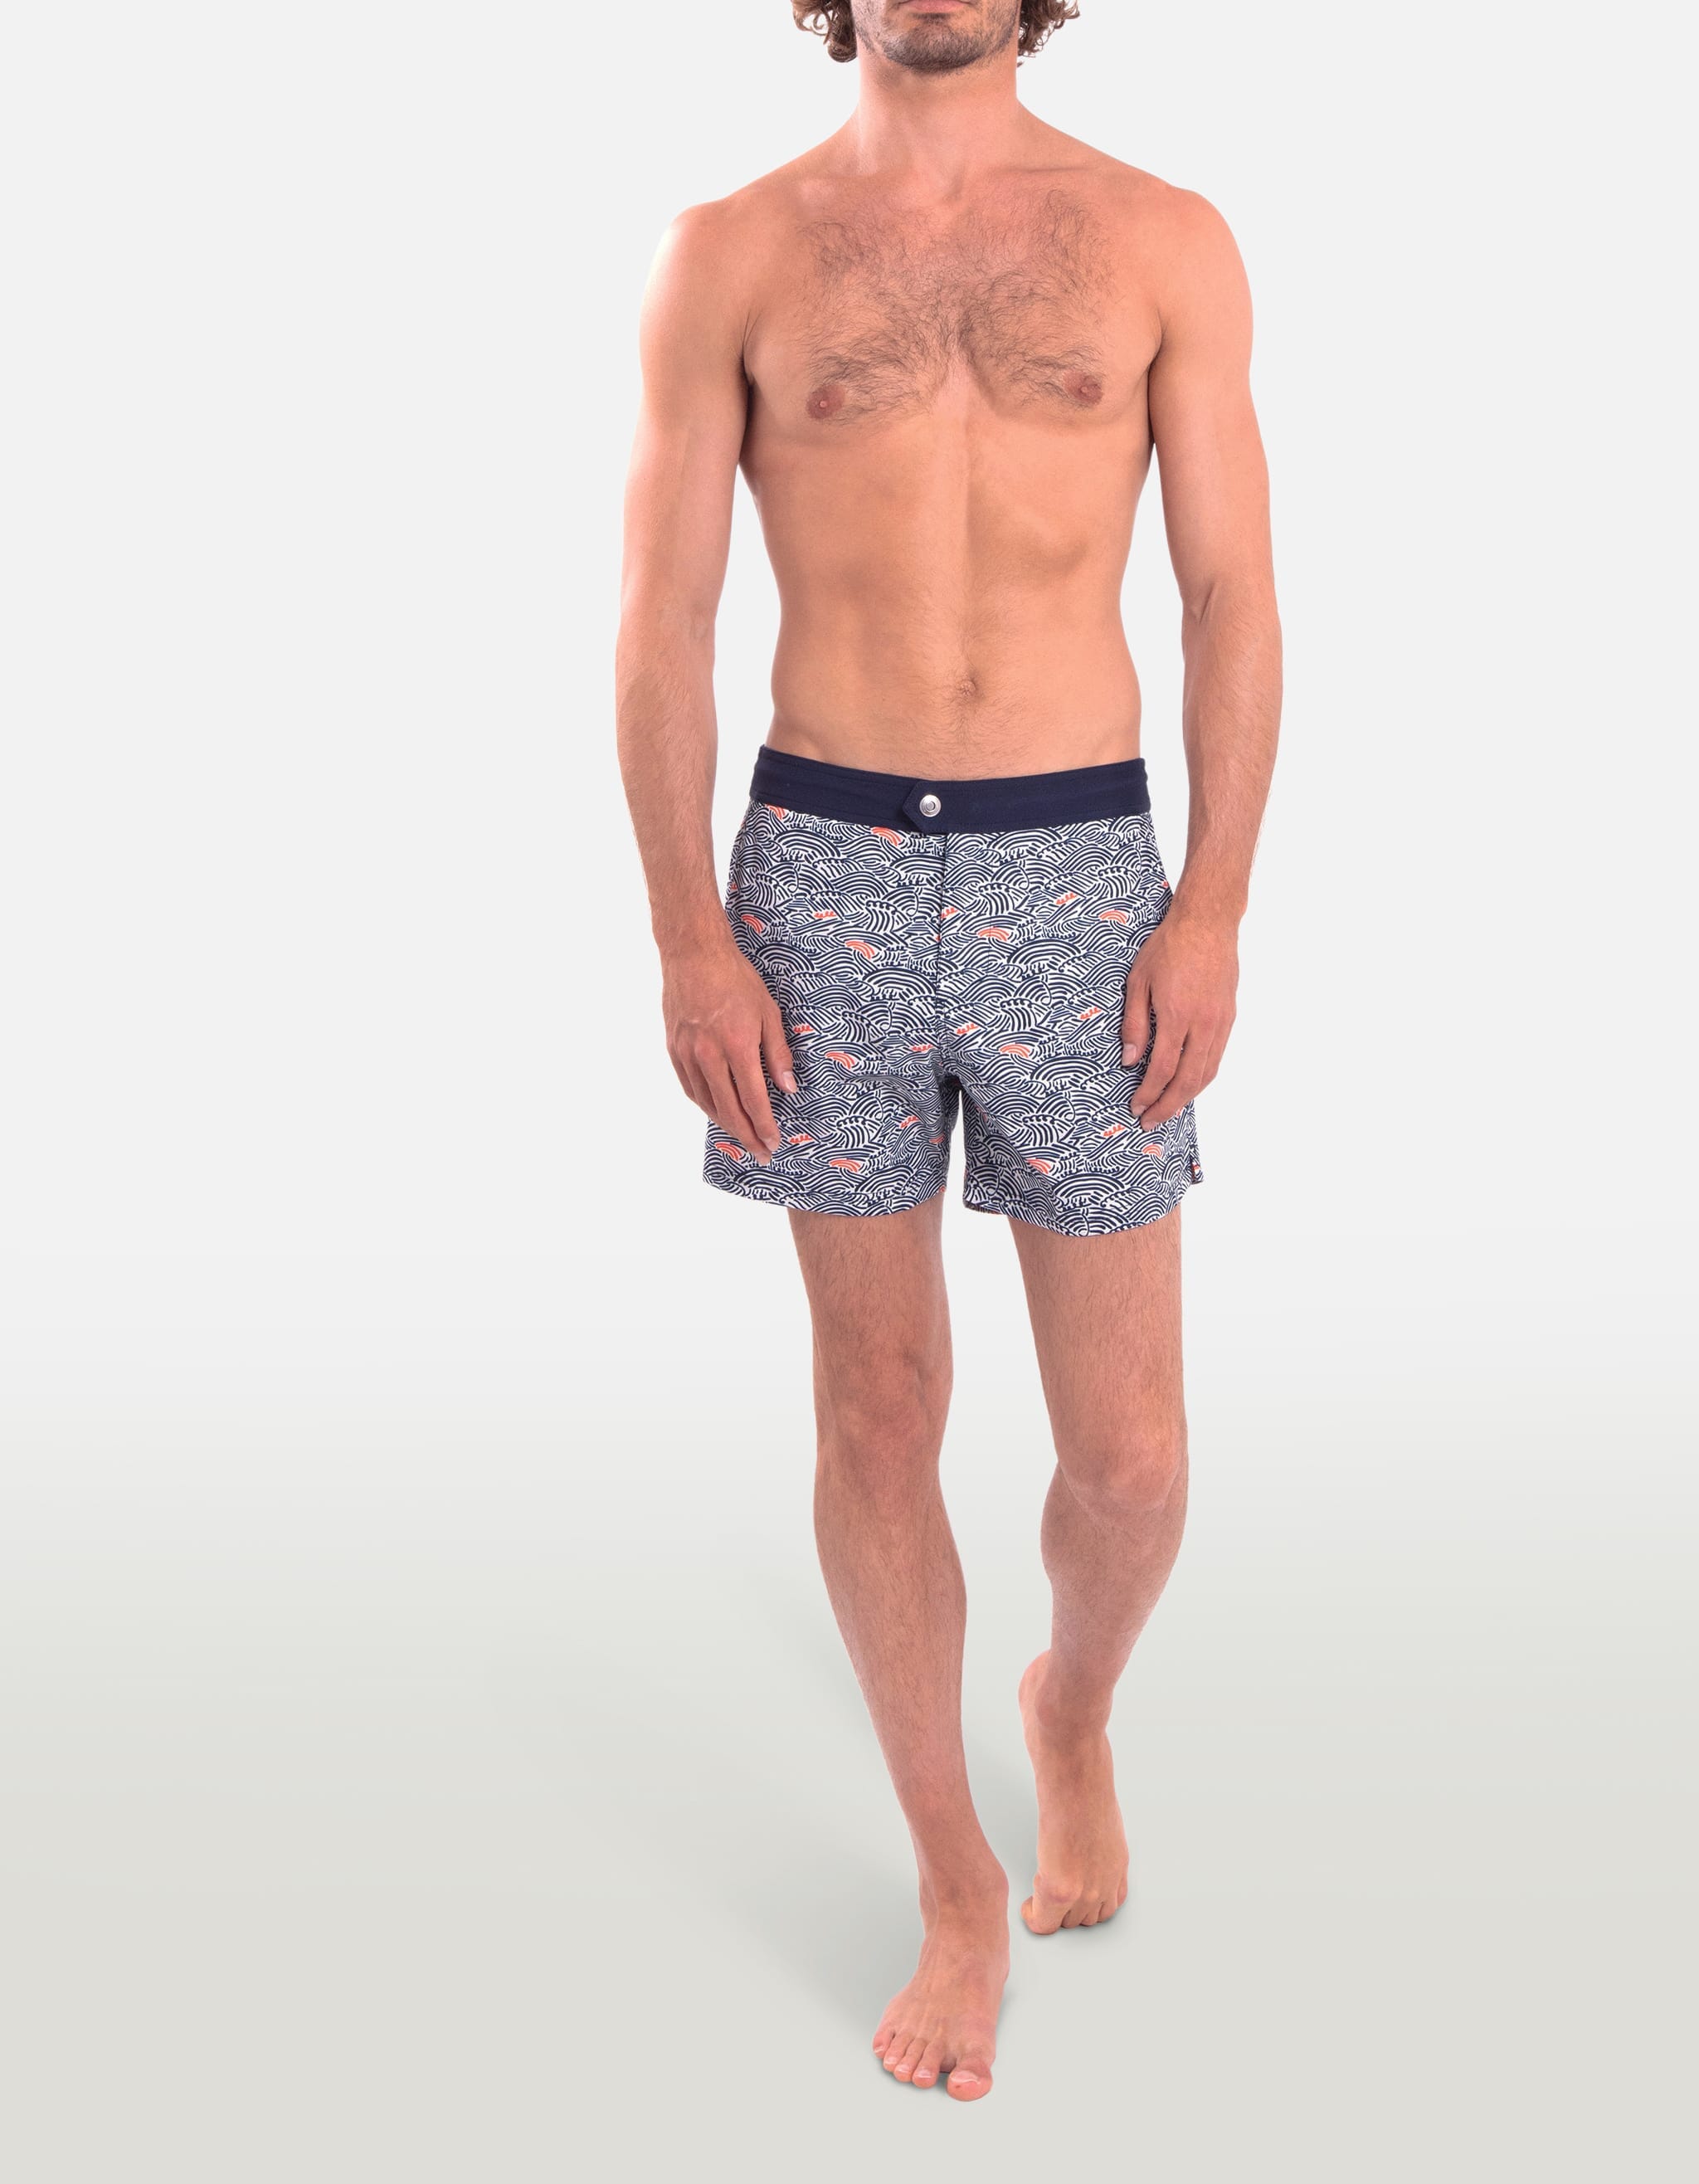 Ben - P23. Blue Nami Swim Shorts - Ben MACKEENE 